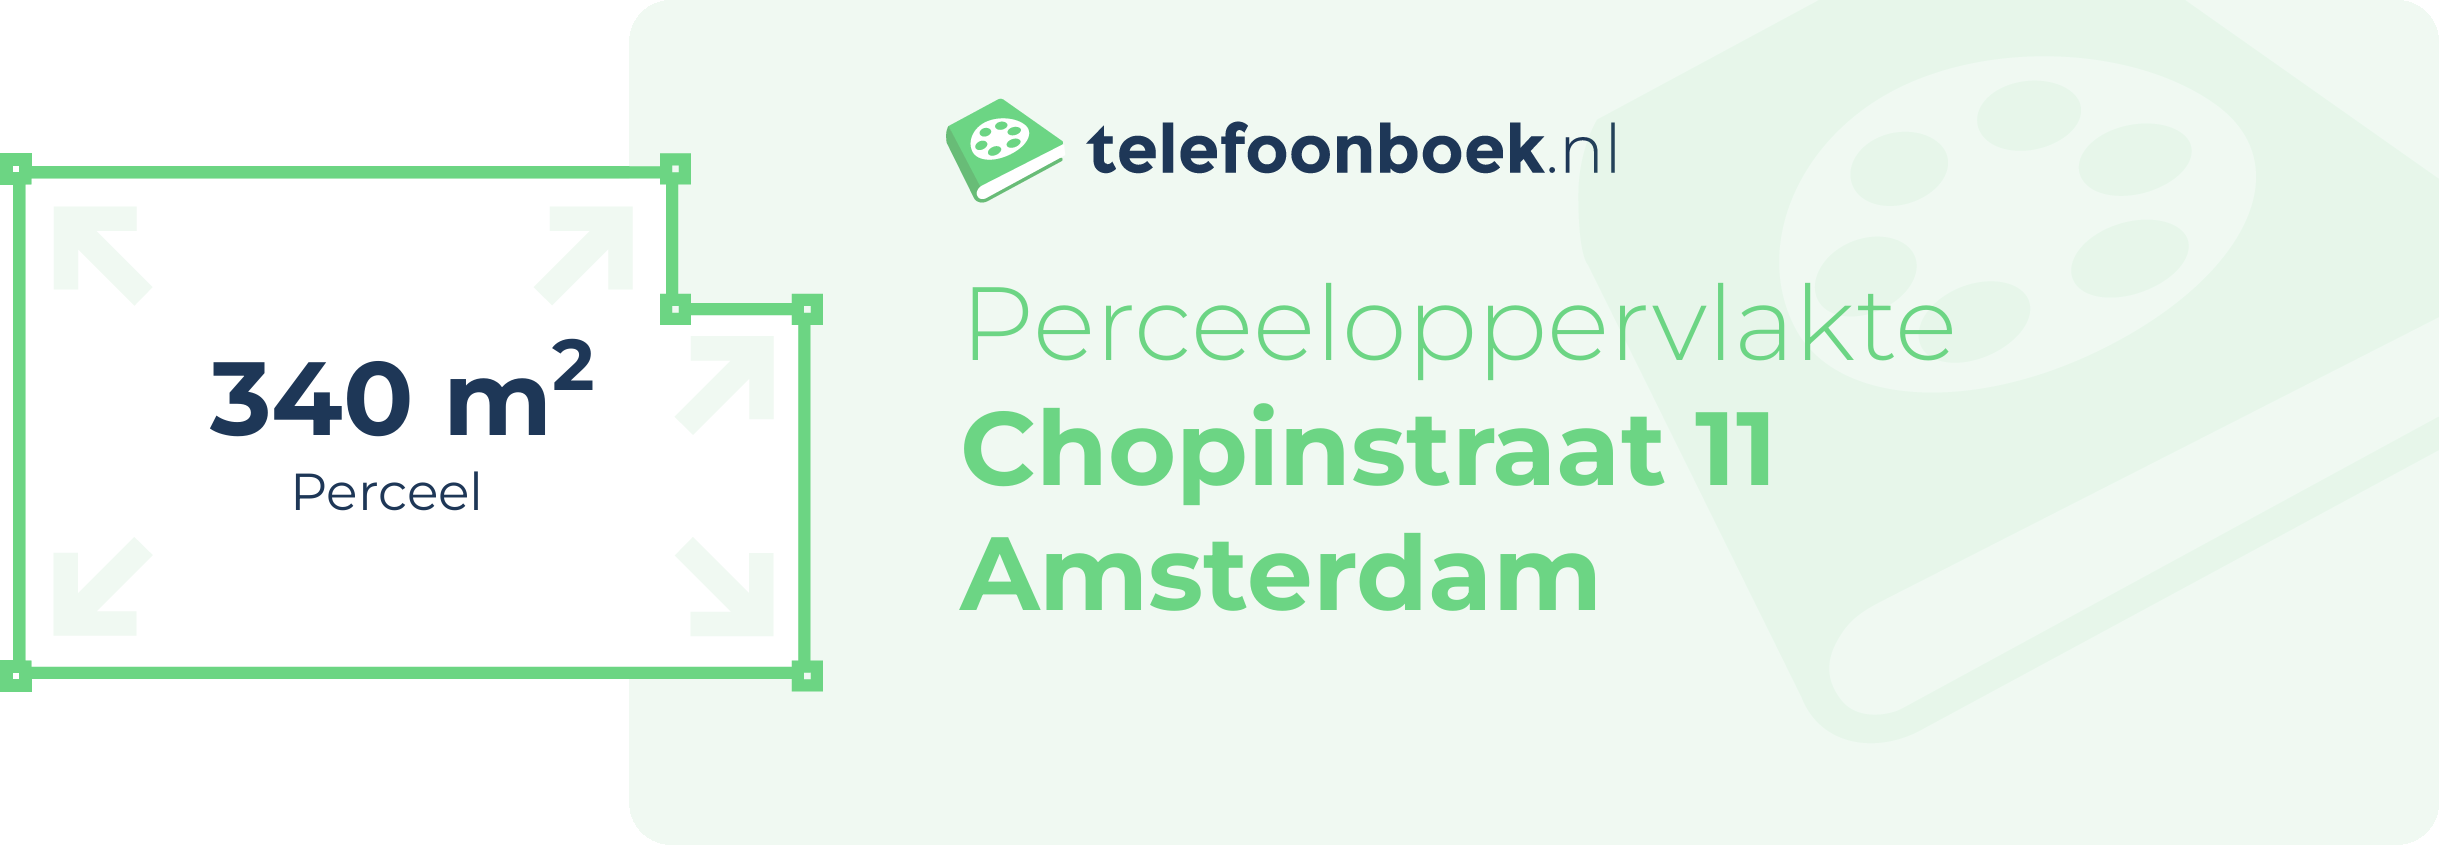 Perceeloppervlakte Chopinstraat 11 Amsterdam